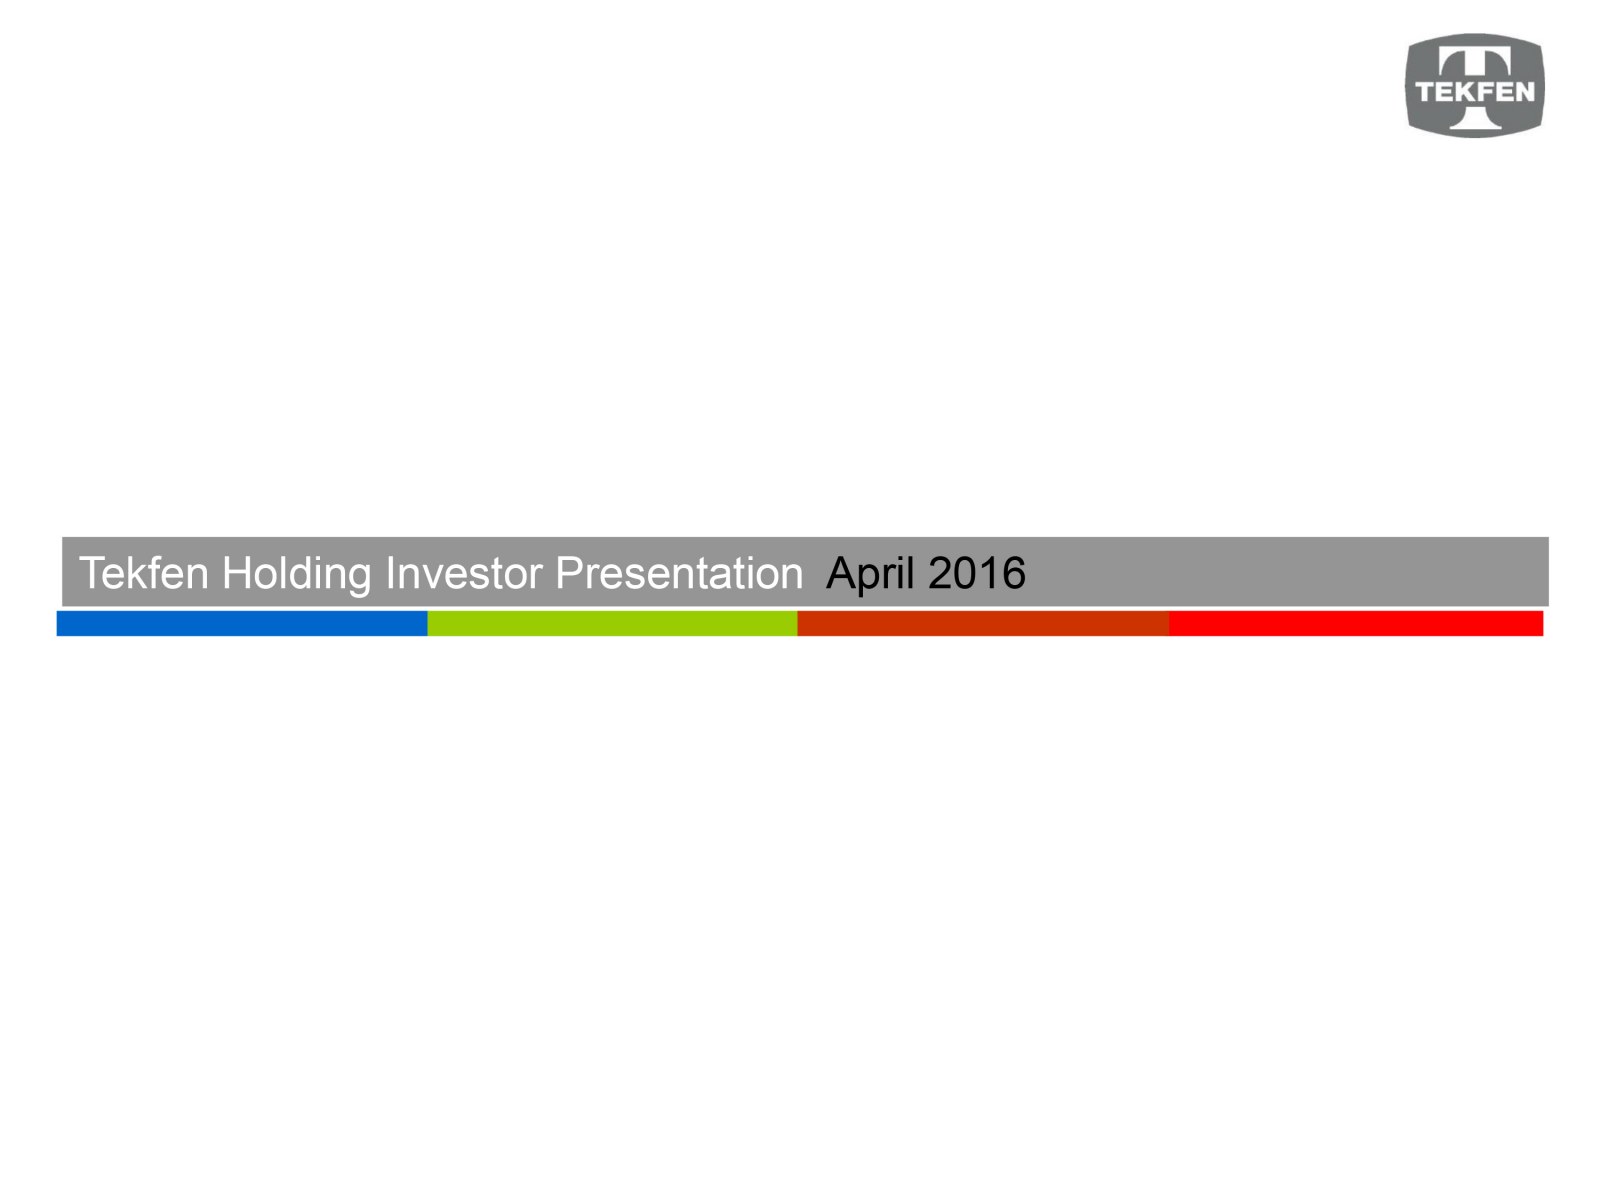 TEKFEN HOLDİNG / Yatırımcı İlişkileri Sunumu / Investor Relations Presentation